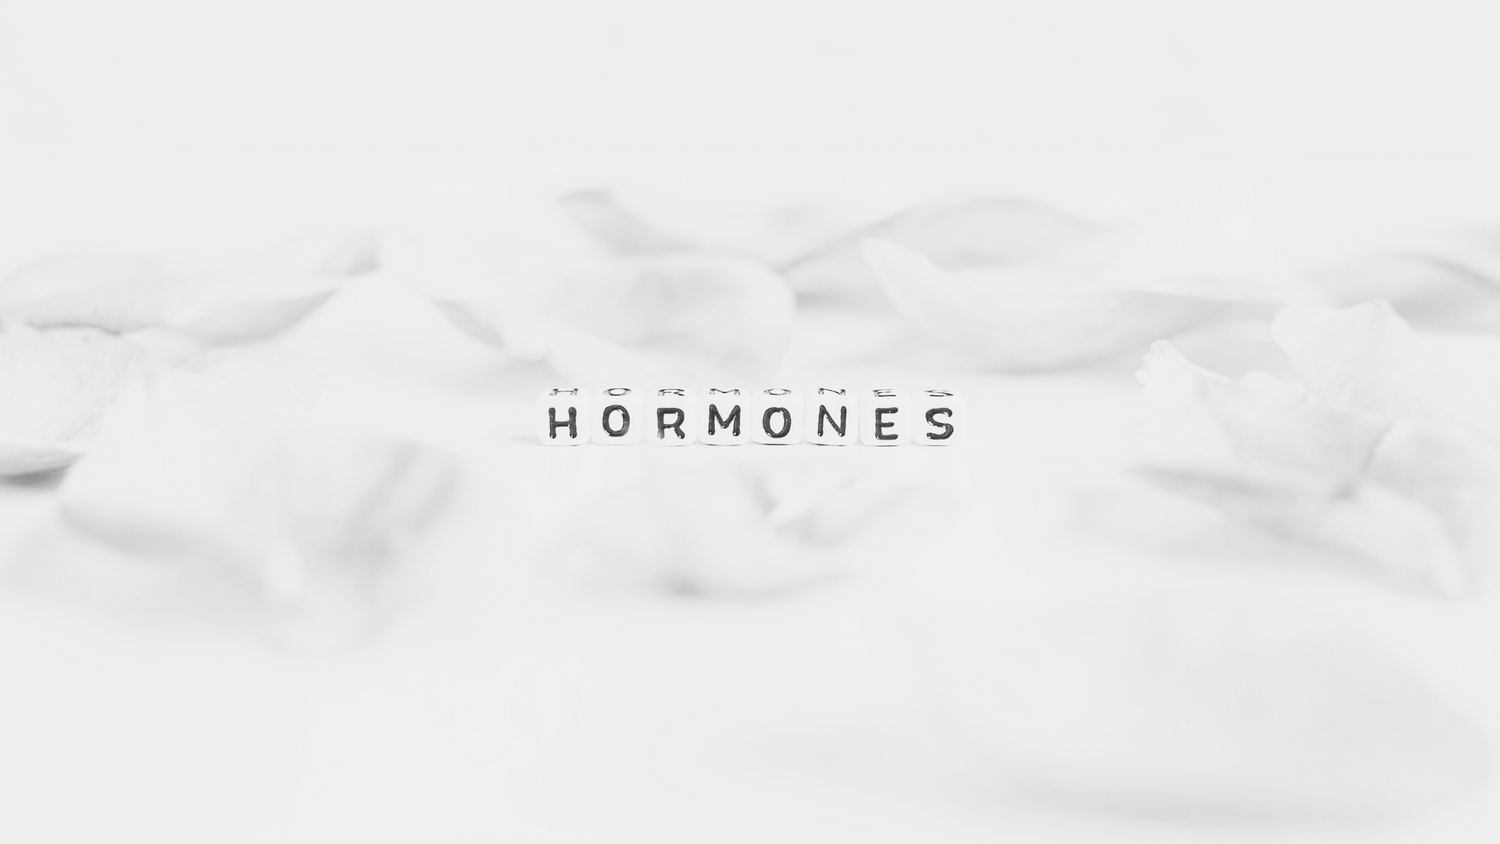 Der Zusammenhang zwischen Hormonen und starkem Schwitzen: Verstehen wir die hormonelle Rolle beim Schwitzen